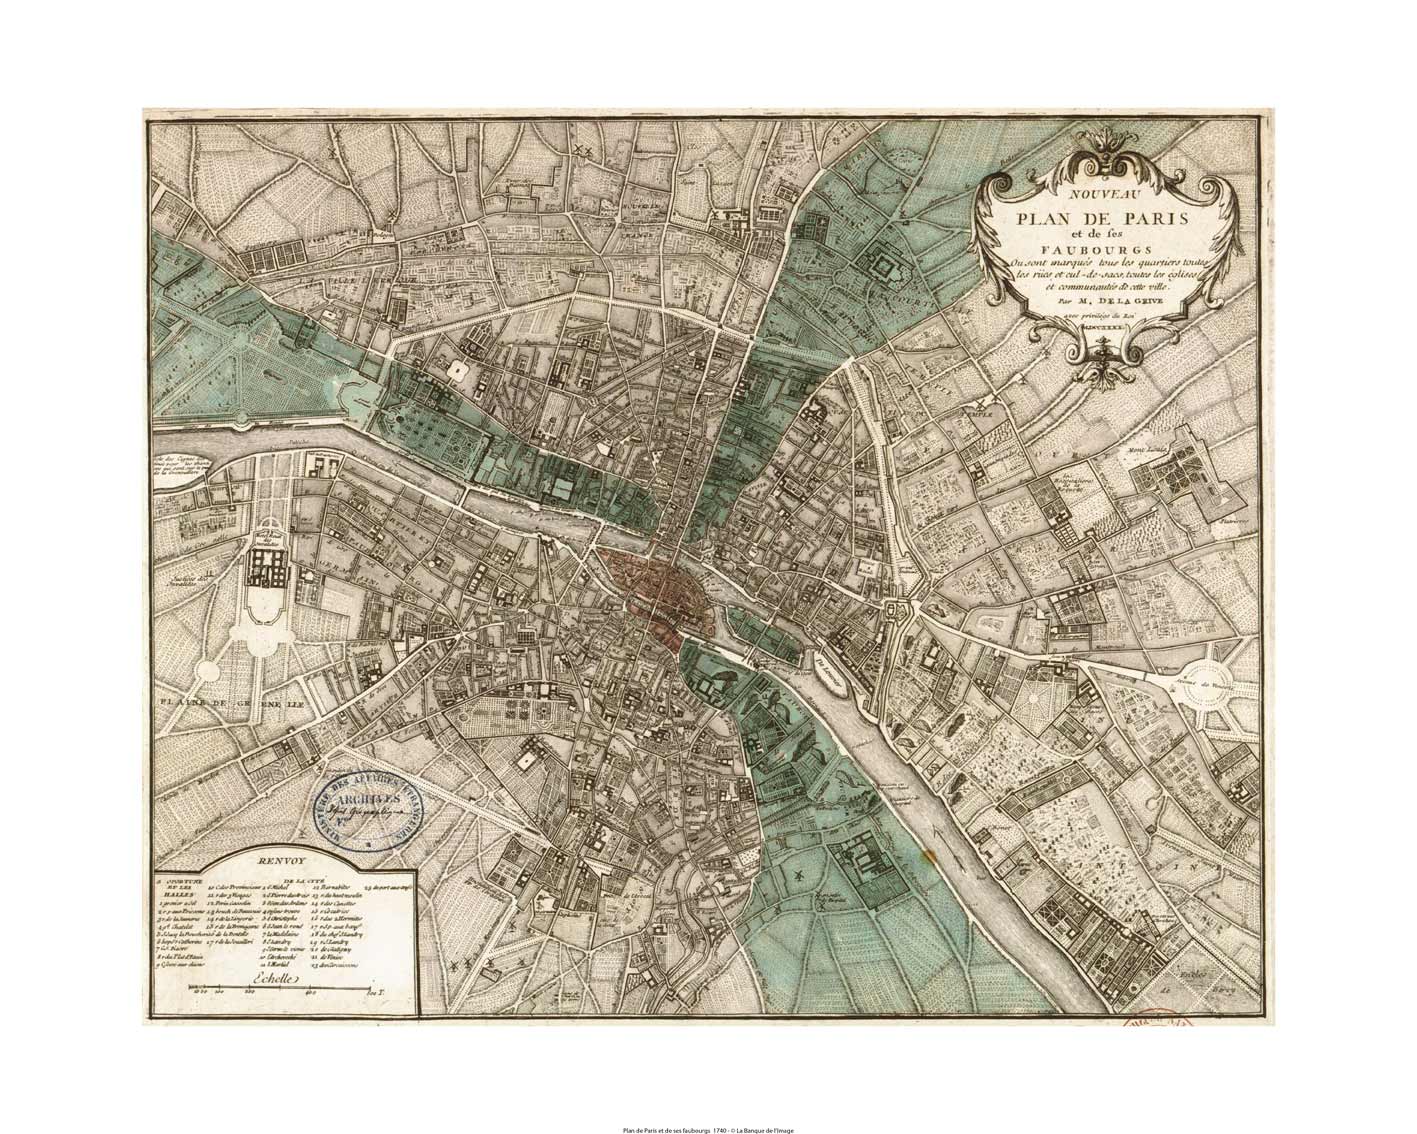 Plan de paris et ses faubourgs en 1740